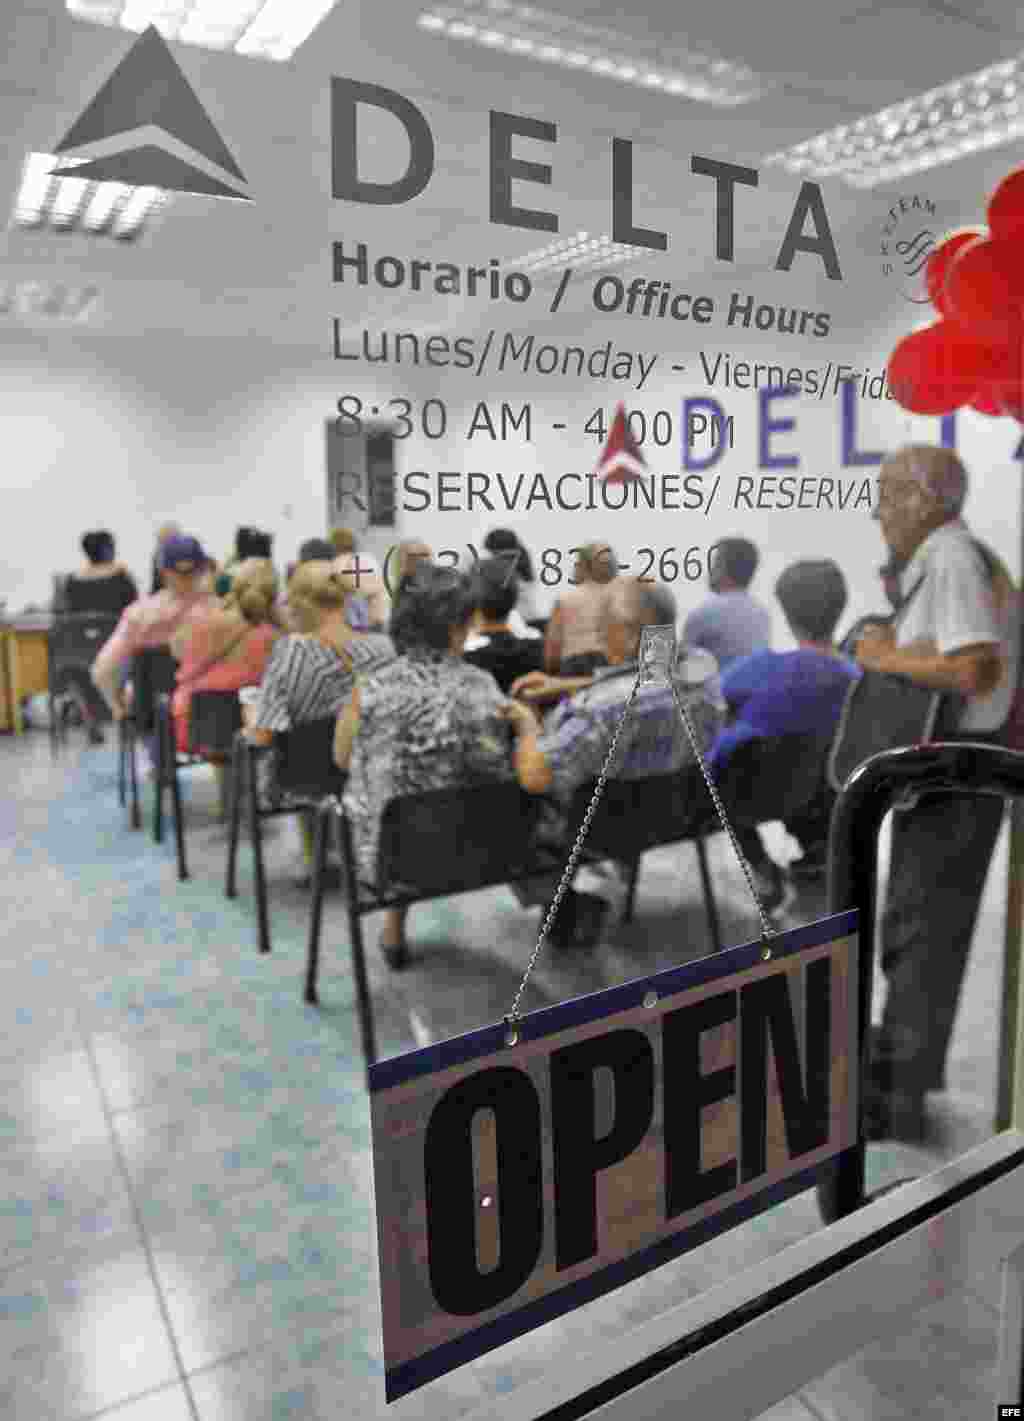 Clientes de la aerolínea estadounidense Delta esperan atención en una oficina hoy, viernes 11 de noviembre de 2016, en La Habana (Cuba)